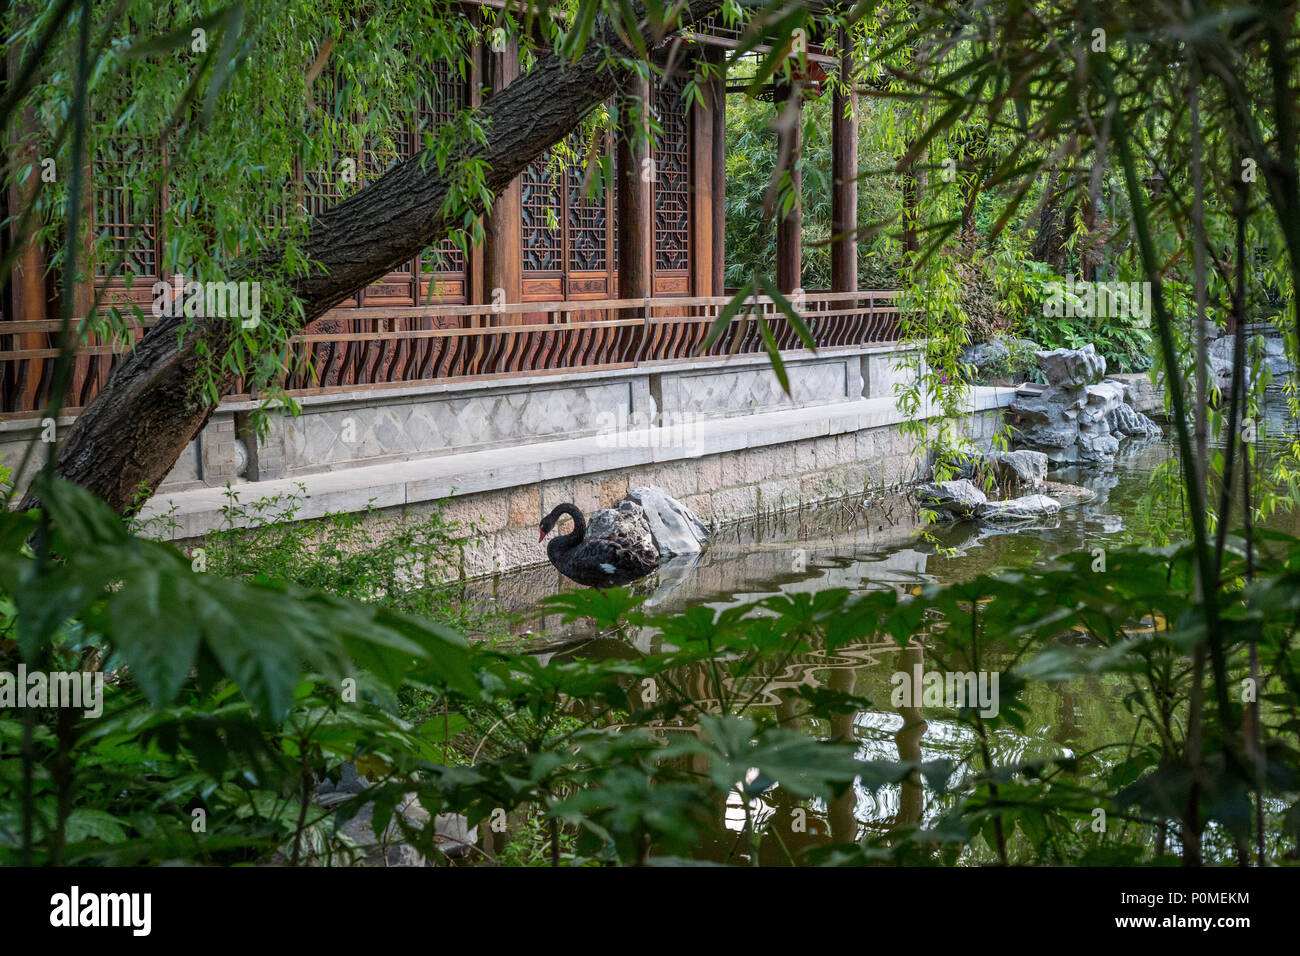 Yangzhou Jiangsu China A Black Swan In A Traditional Chinese